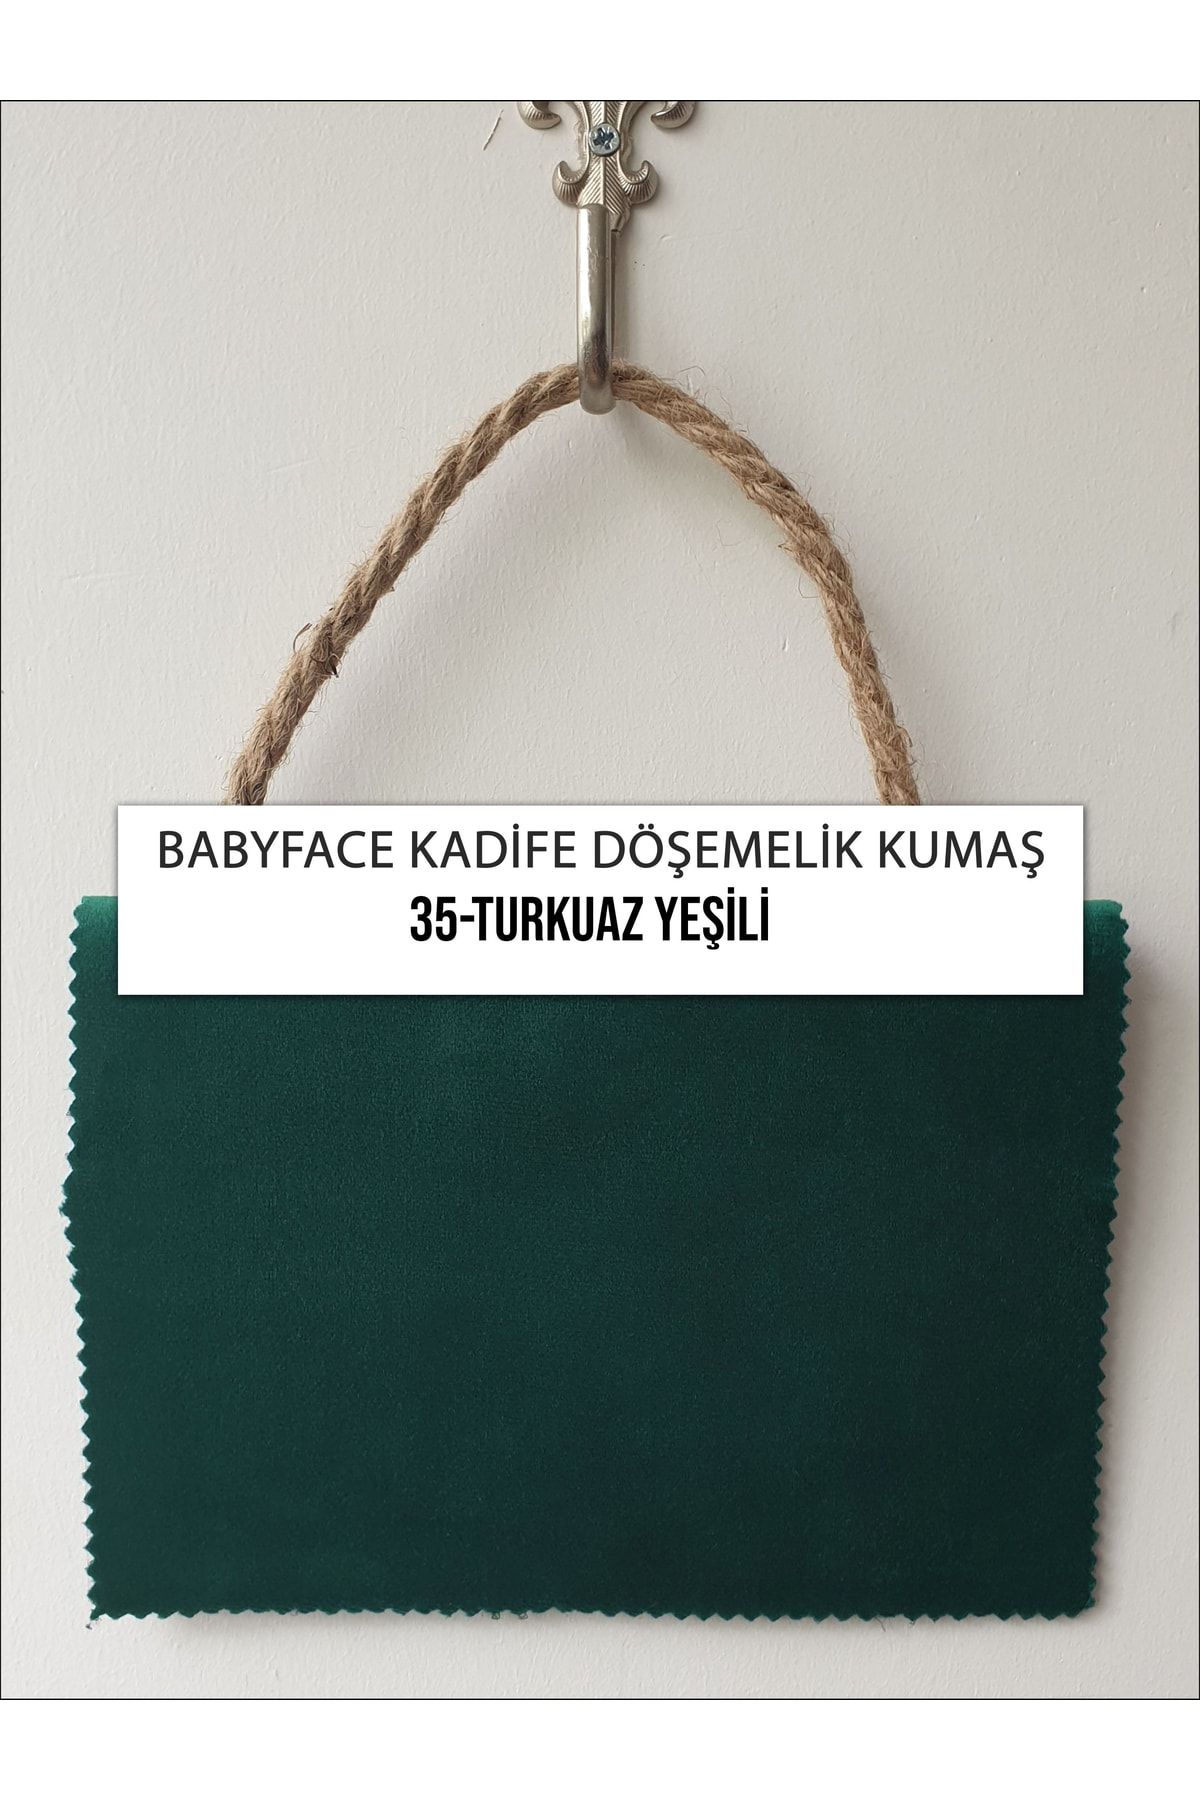 B'Dekor Babyface Yarı Parlak Kadife Koltuk, Berjer Ve Mobilya Için Döşemelik Kumaşları-turkuaz Yeşili